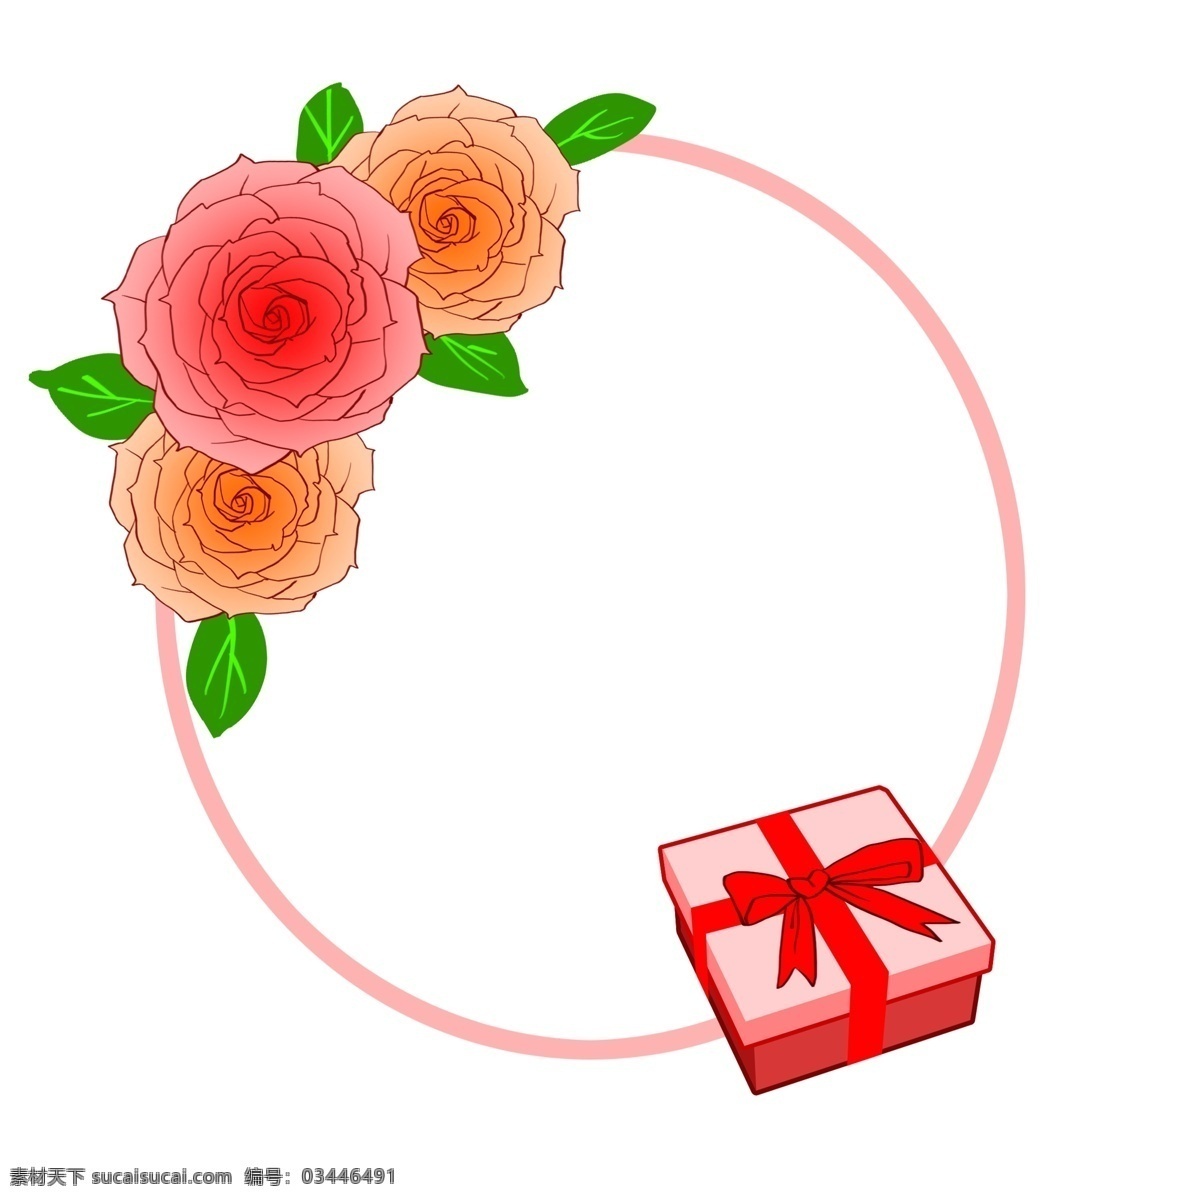 手绘 牡丹 边框 插画 鲜花 手绘边框 红色边框 牡丹边框 插画花朵 红色礼物盒 礼物盒插画